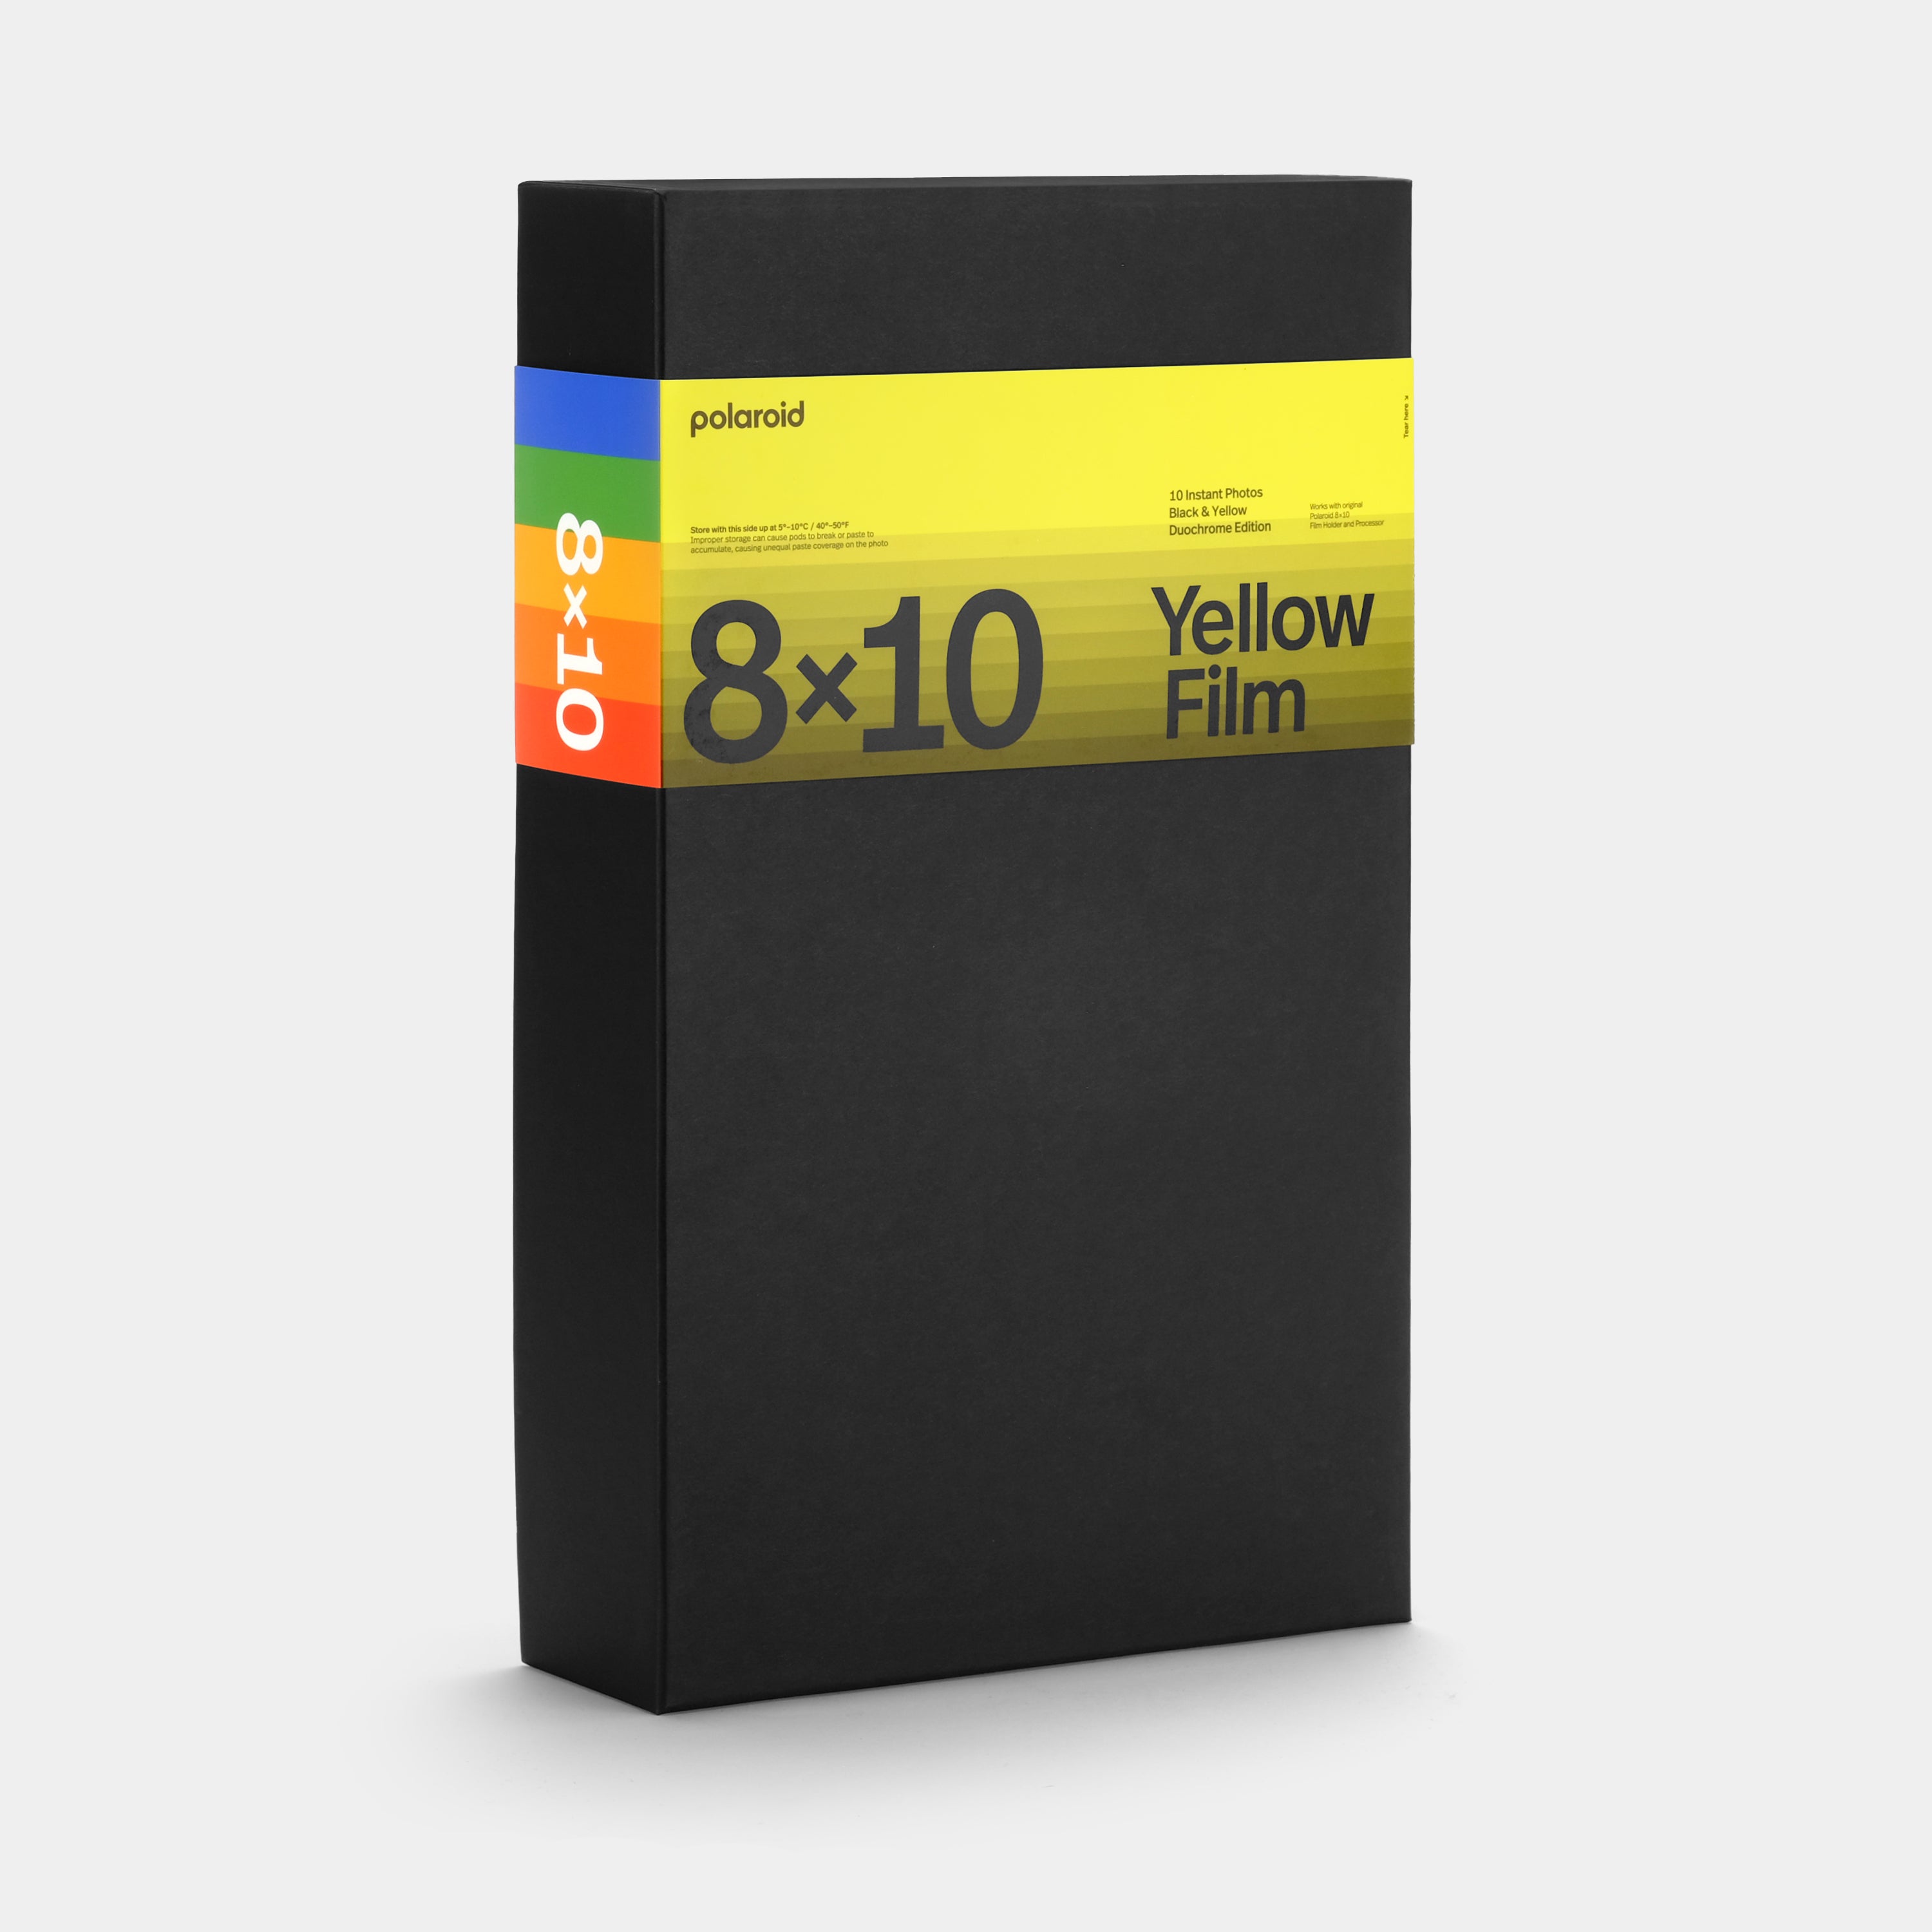 Polaroid Duochrome Film for 8 x 10 - Black & Yellow Edition